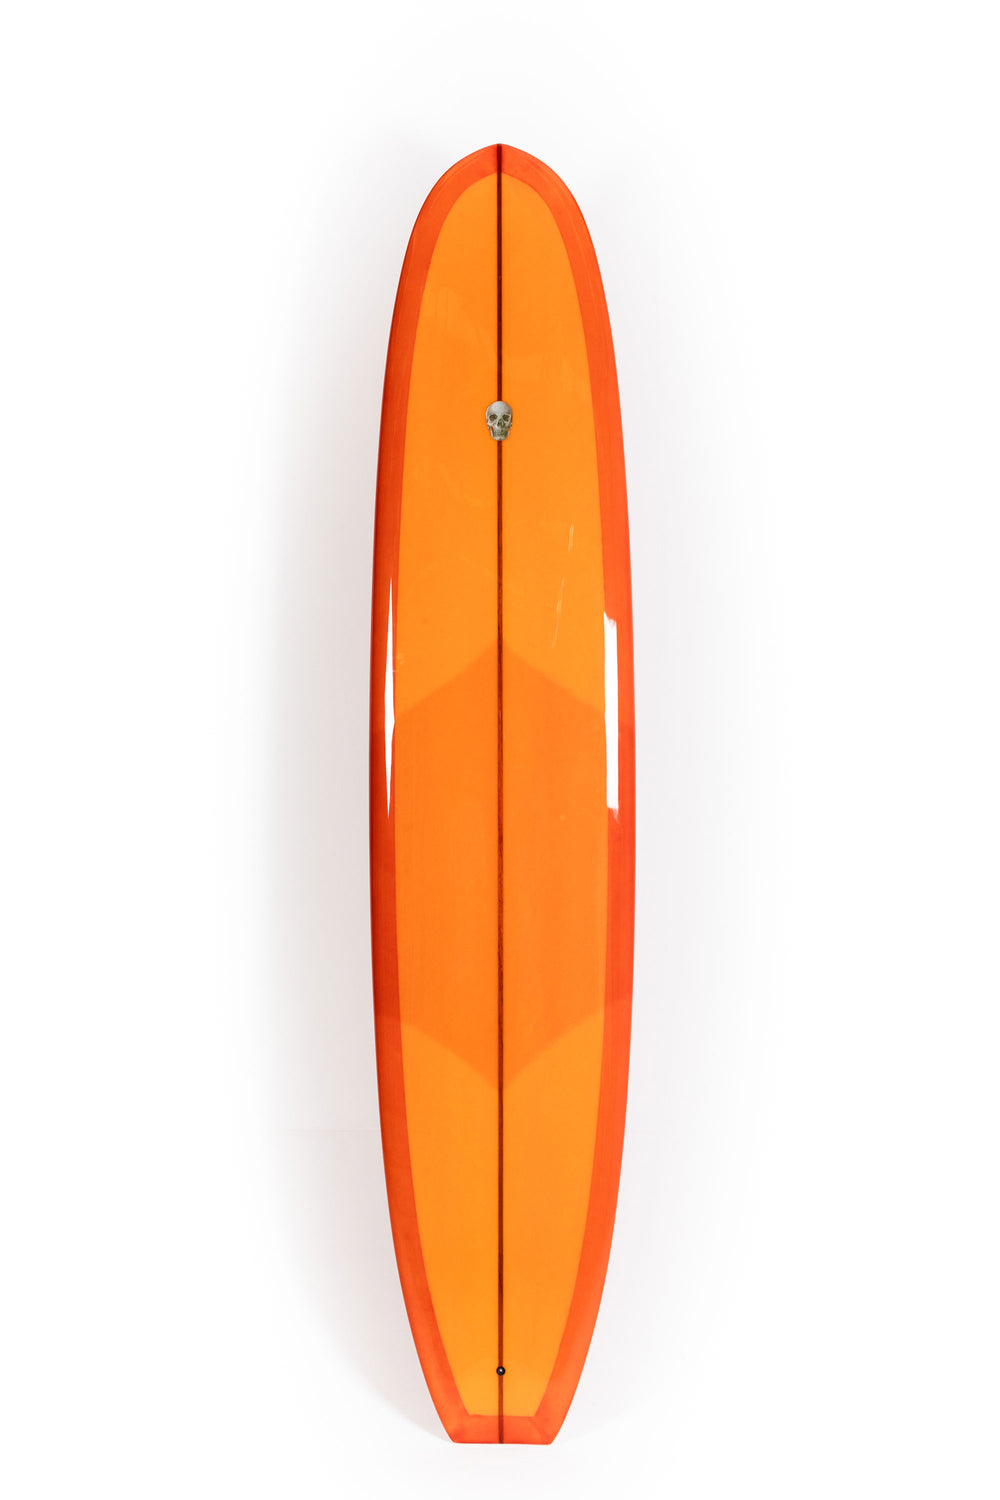 Pukas Surf Shop - Christenson Surfboards - BONNEVILLE - 9'0